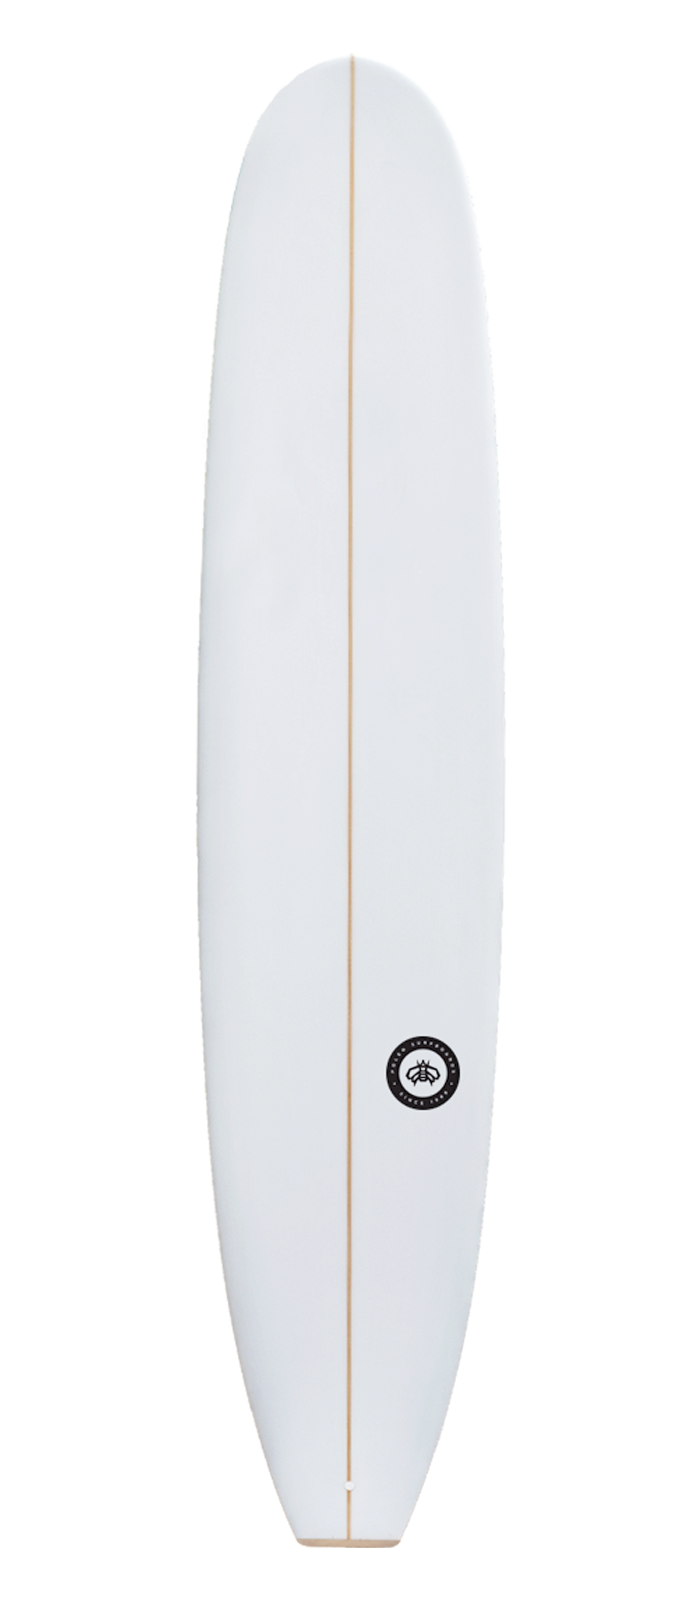 GRACE surfboard model